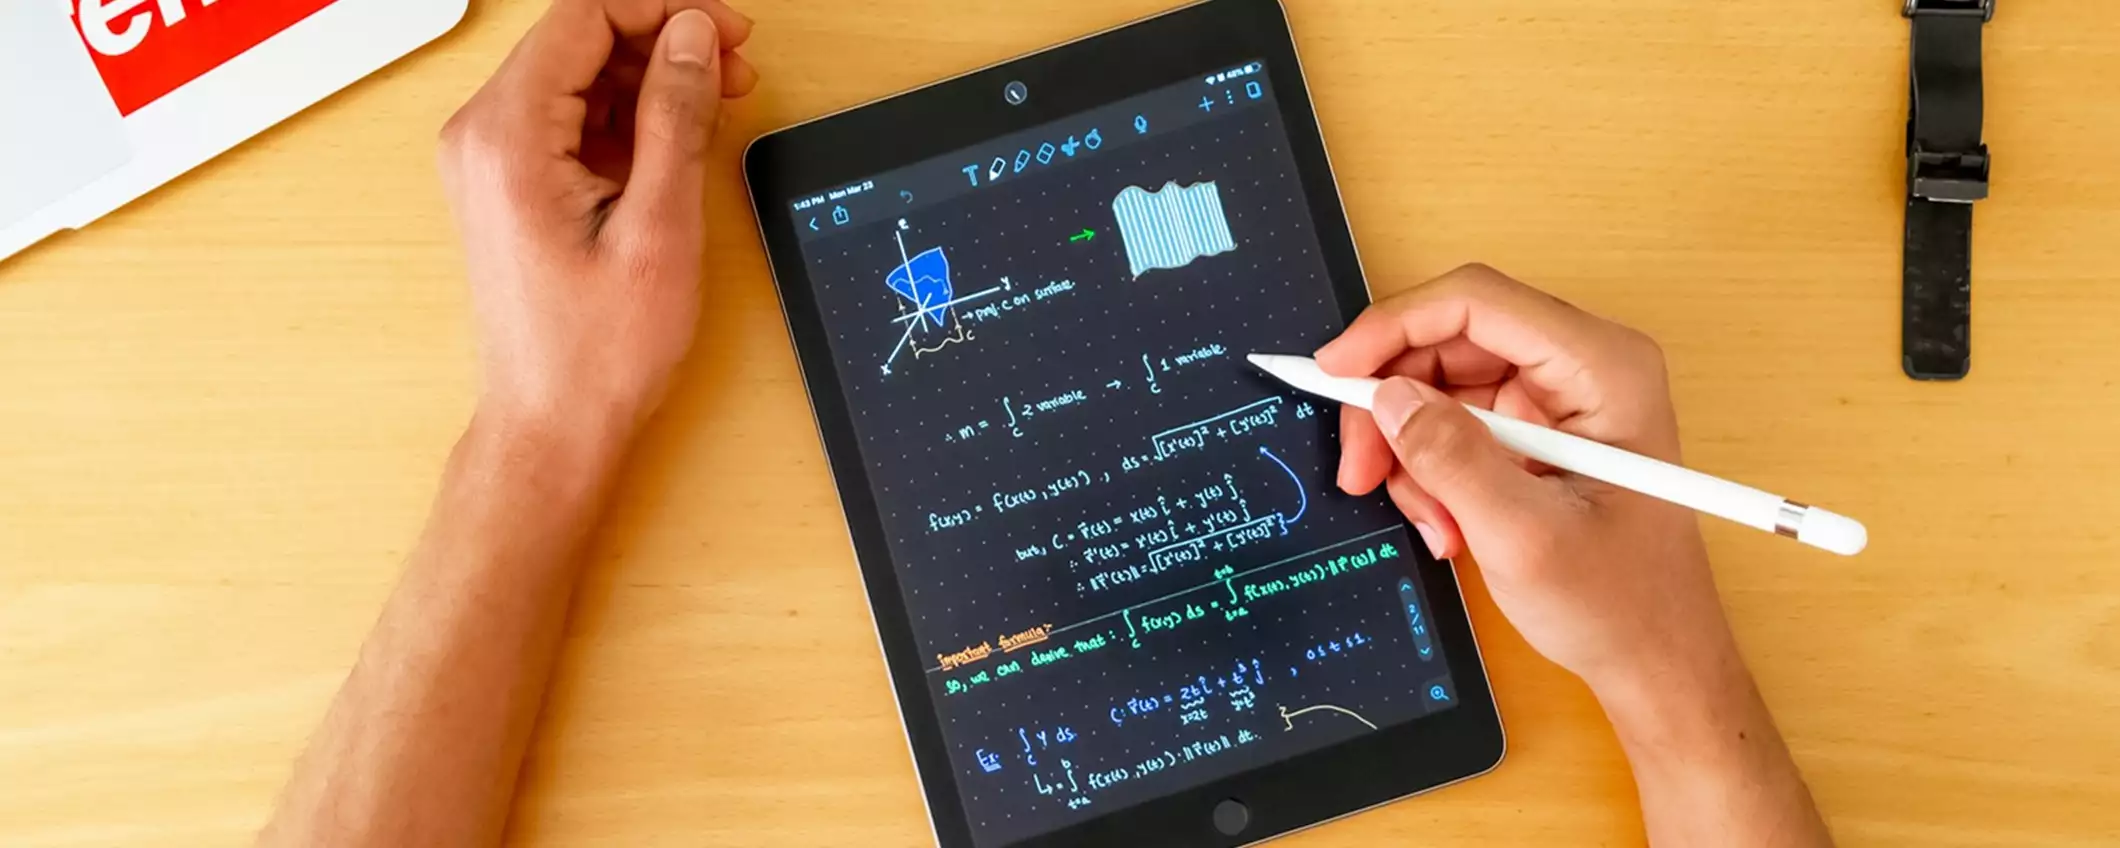 Le migliori app per iPad per utilizzare Apple Pencil